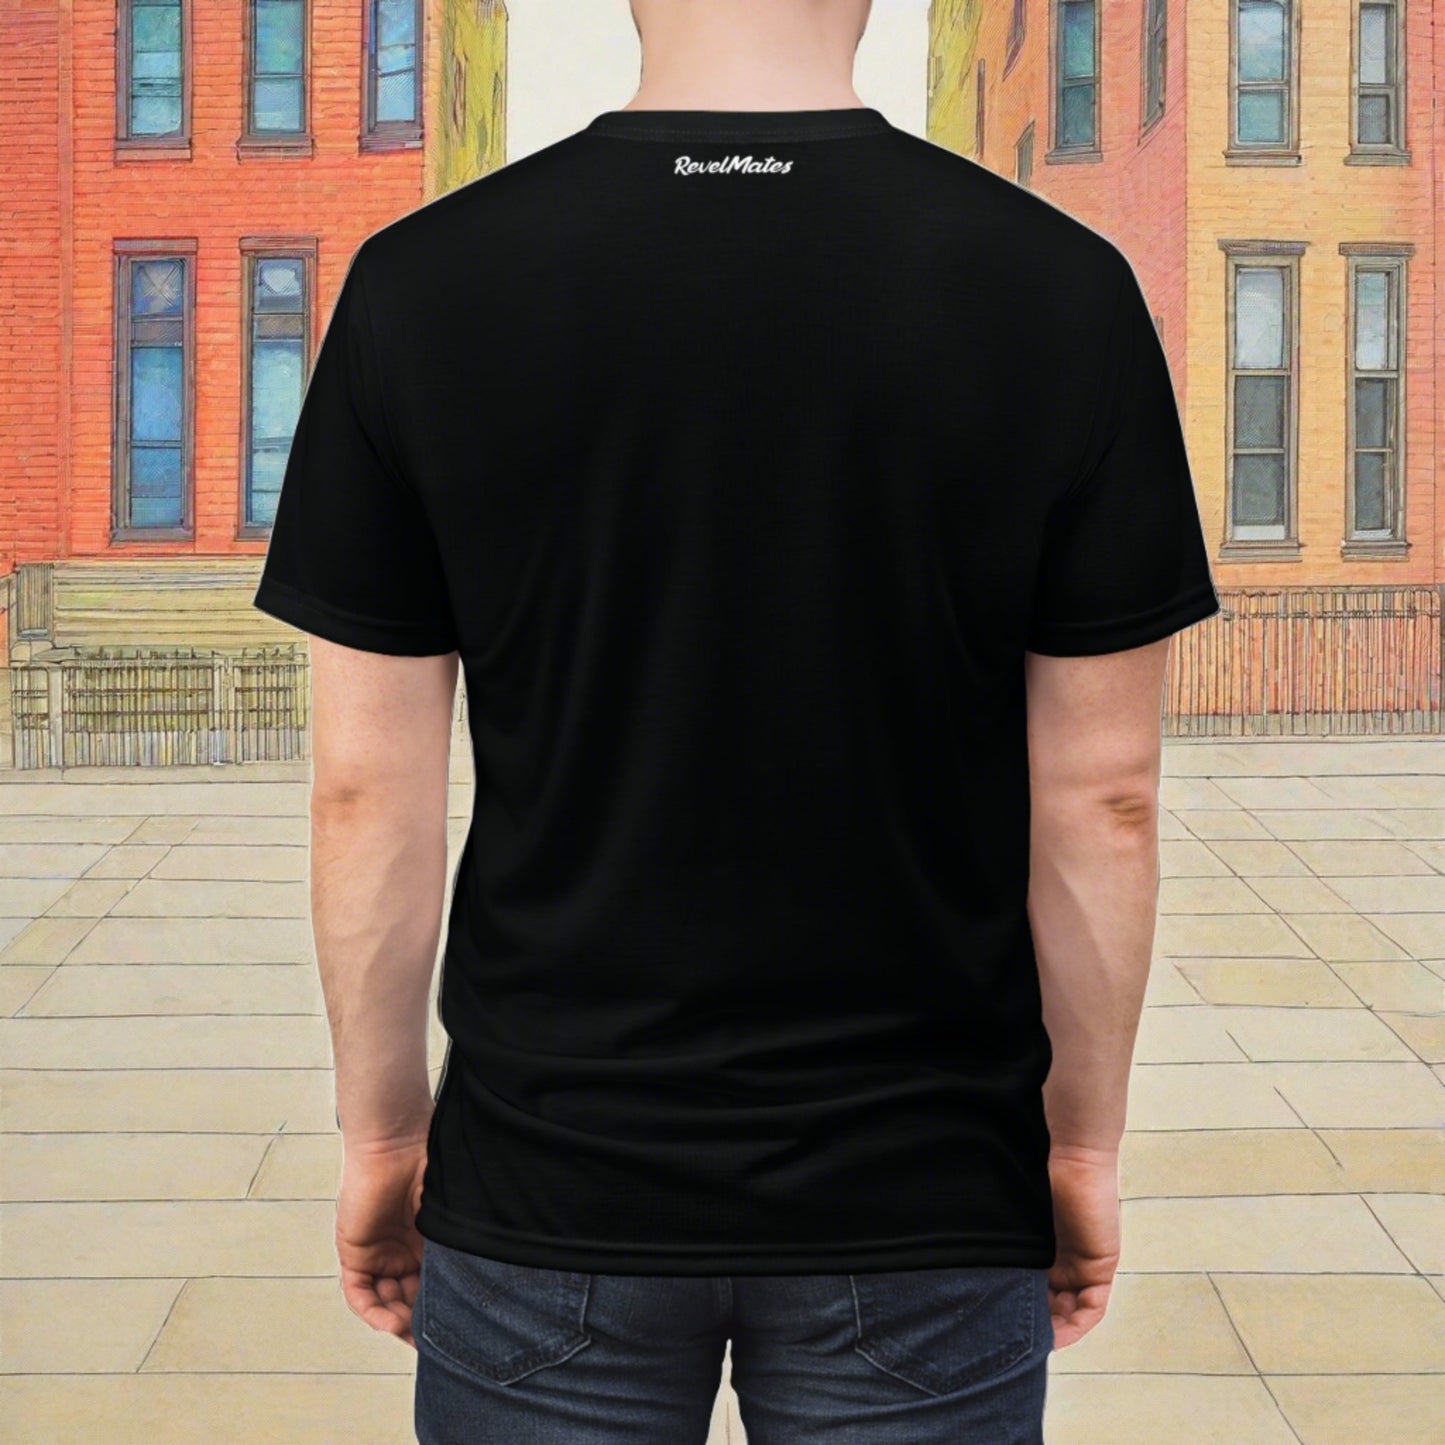 Unisex T-Shirt | All Over Print Tee | Black & White RevelMates Design